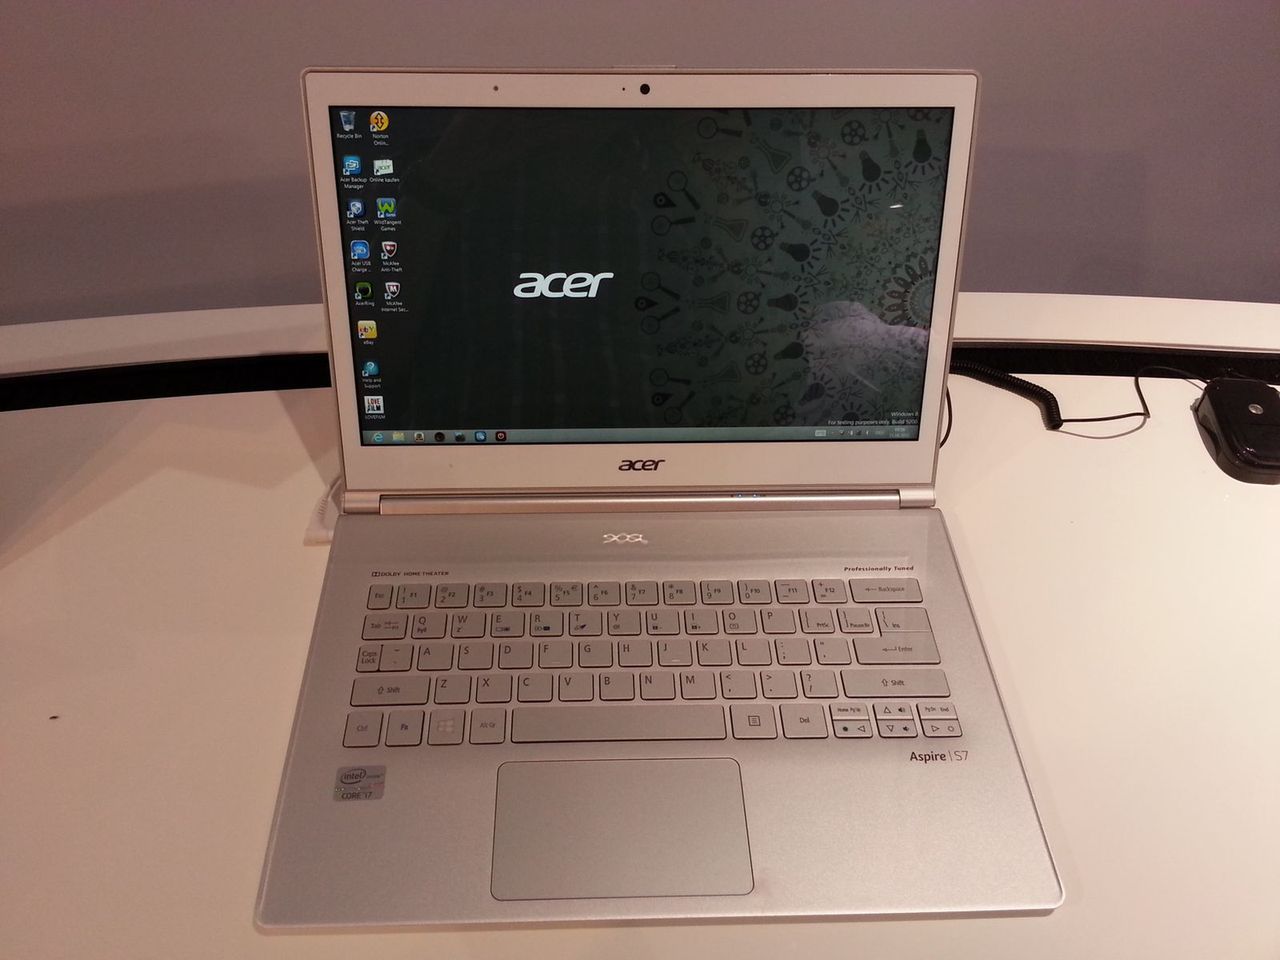 Acer Aspire S7 - jak się chce, to można (zrobić dobrze) [IFA 2012]